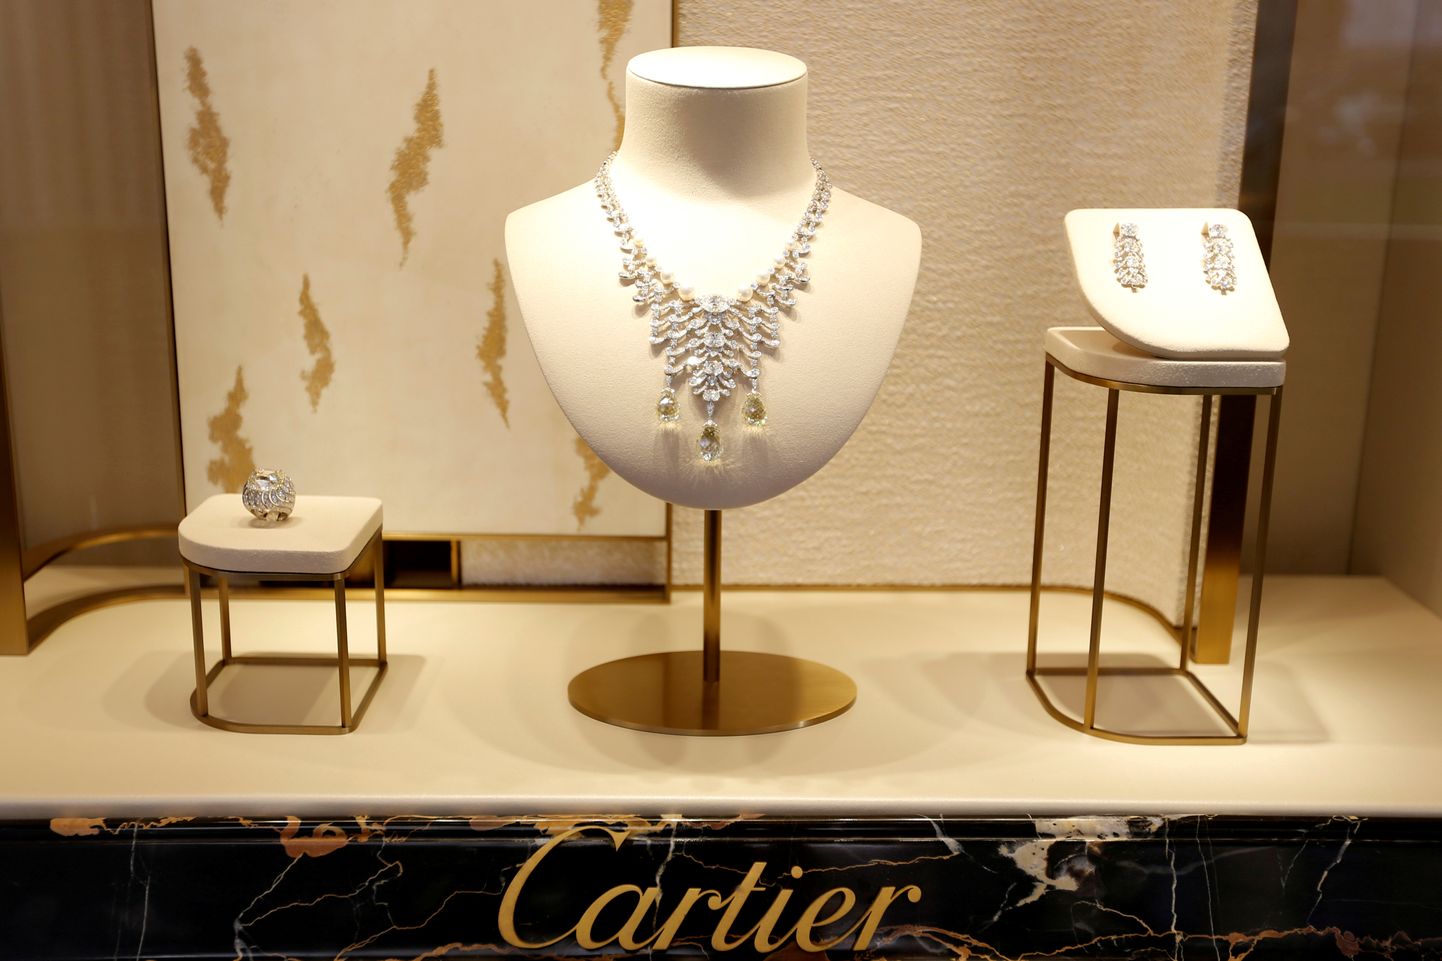 Richemontile kuulub näiteks Cartier kaubamärk.